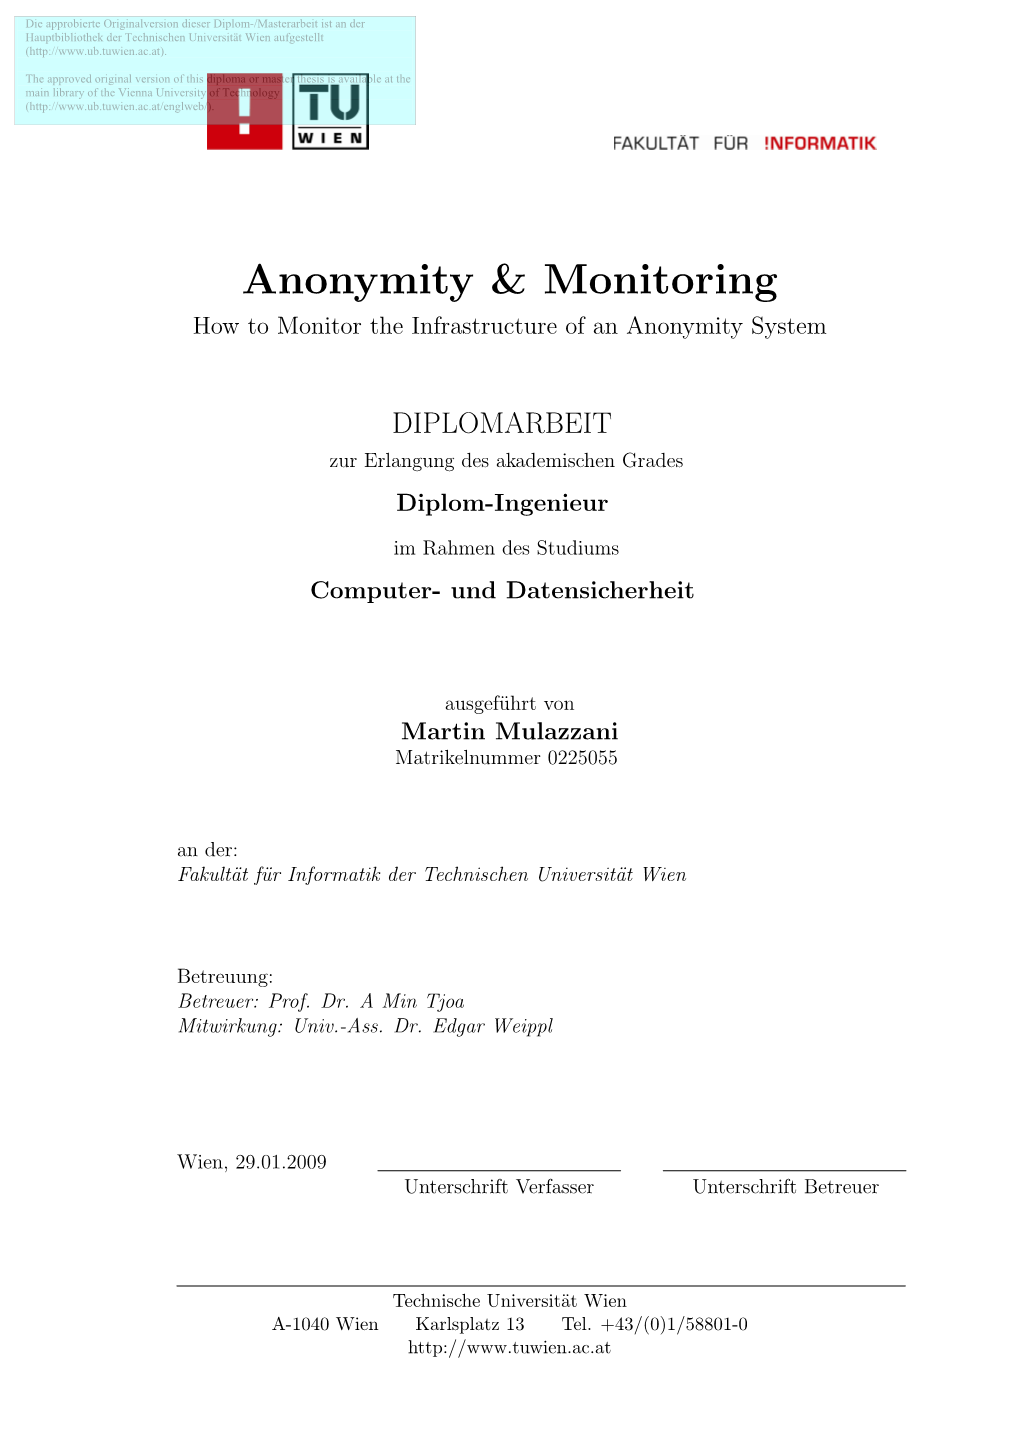 Anonymity & Monitoring